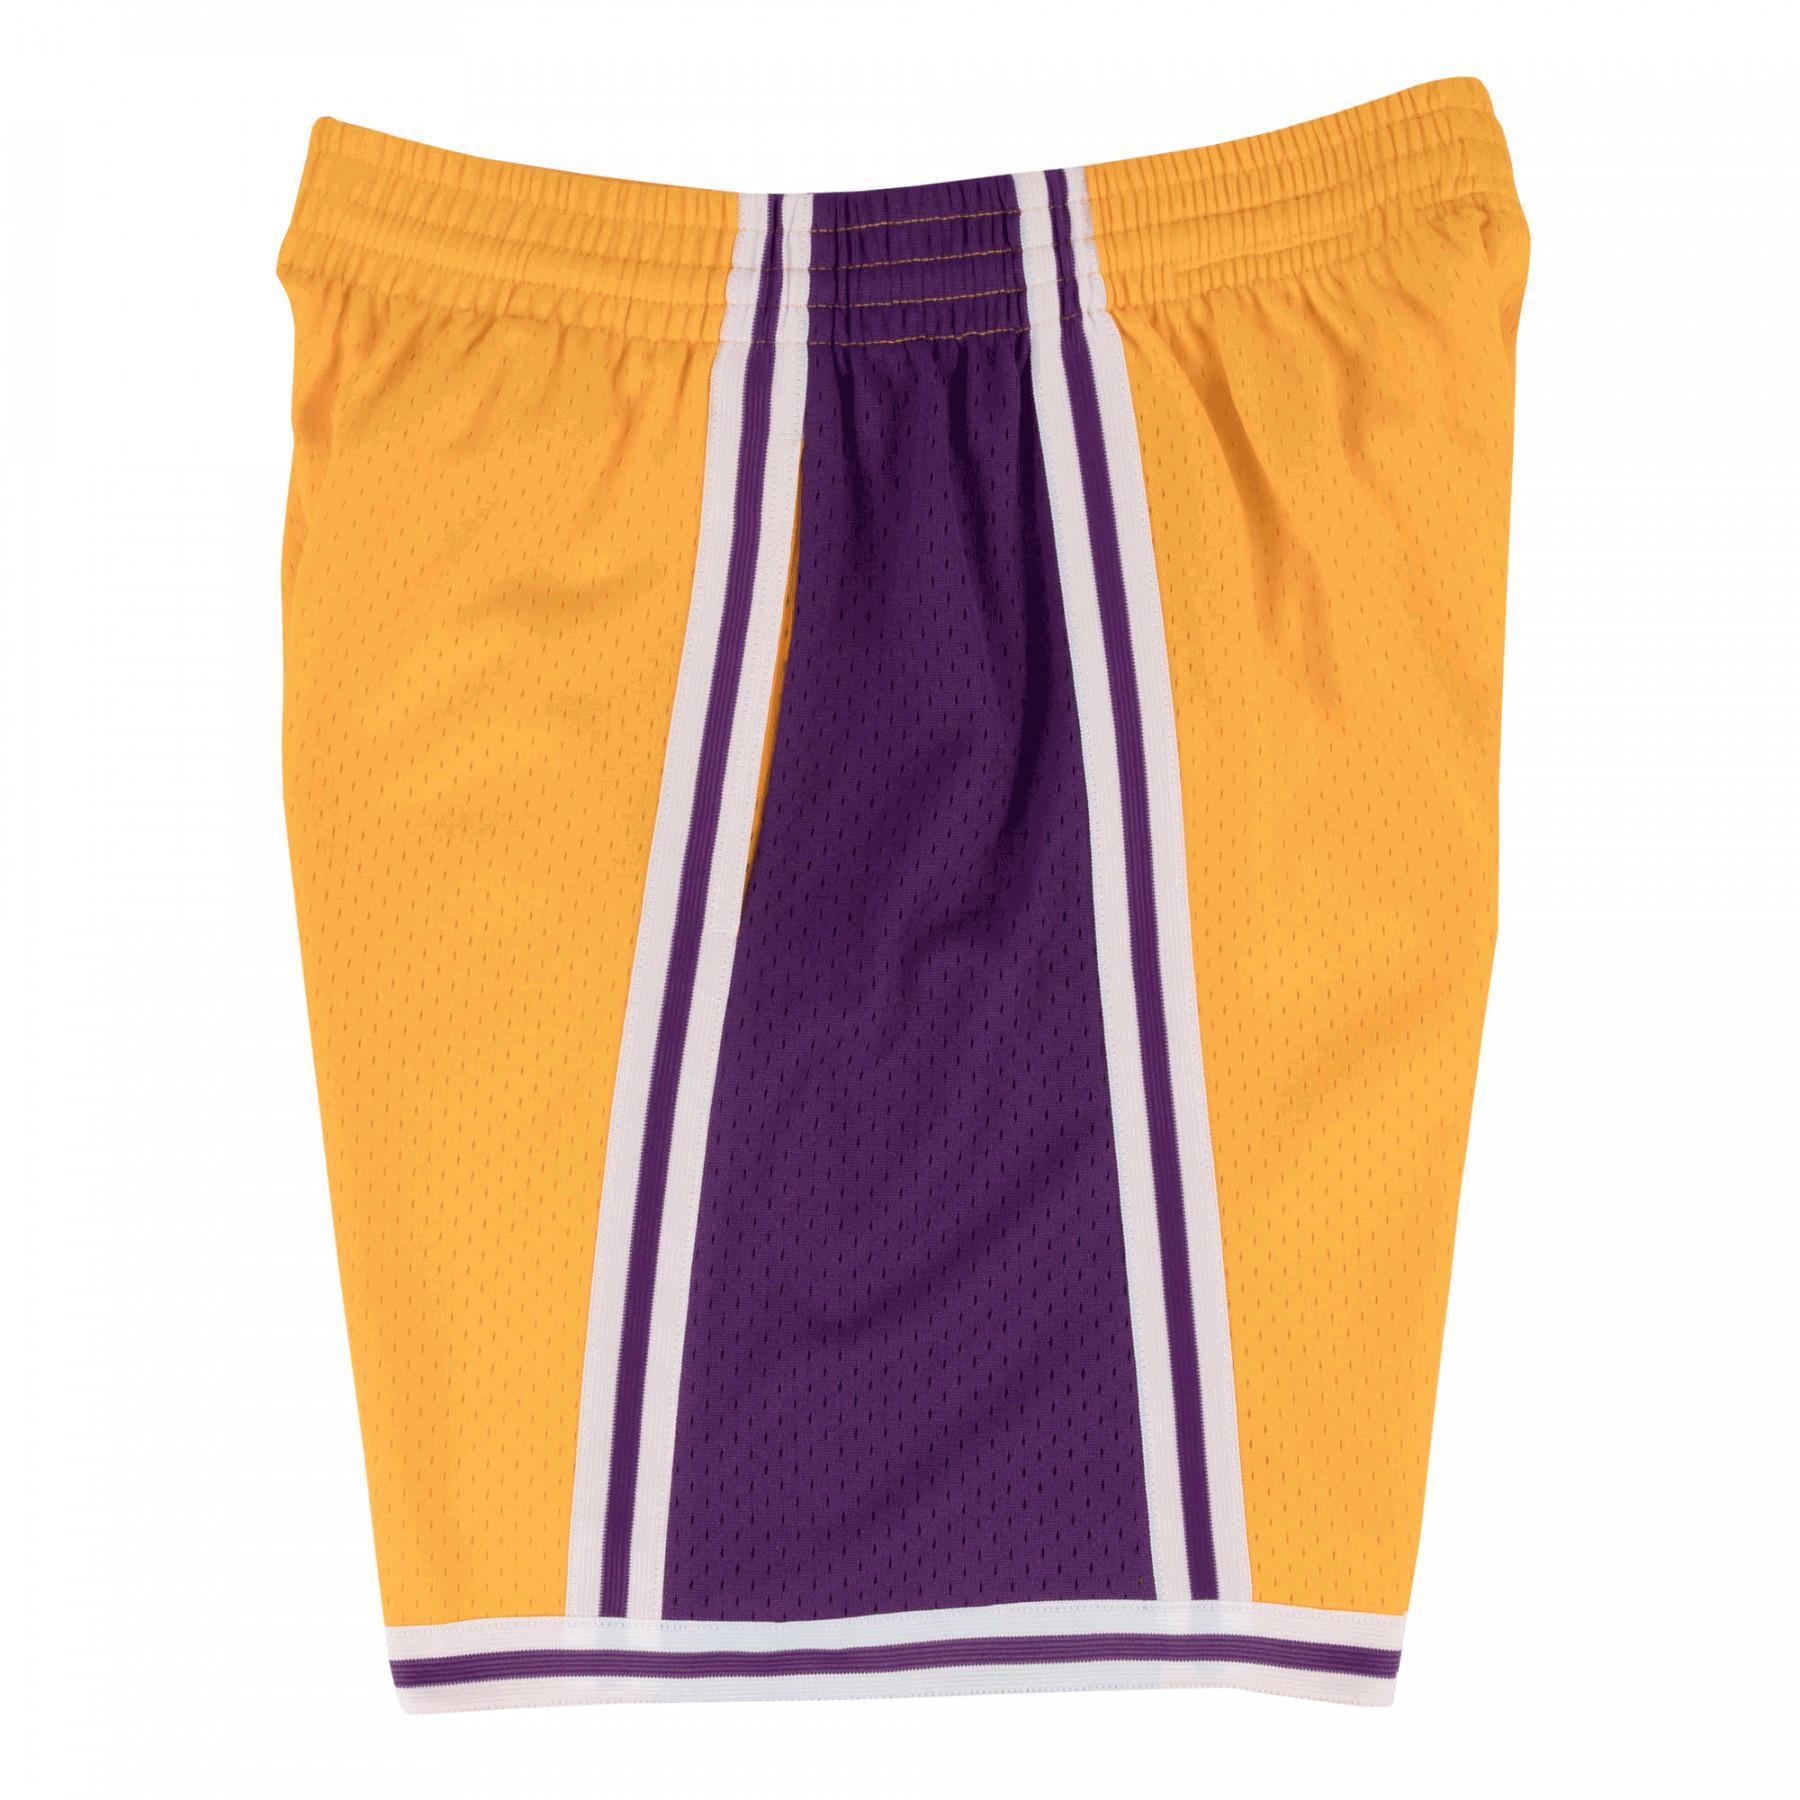 Nba swingman shorts Los Angeles Lakers